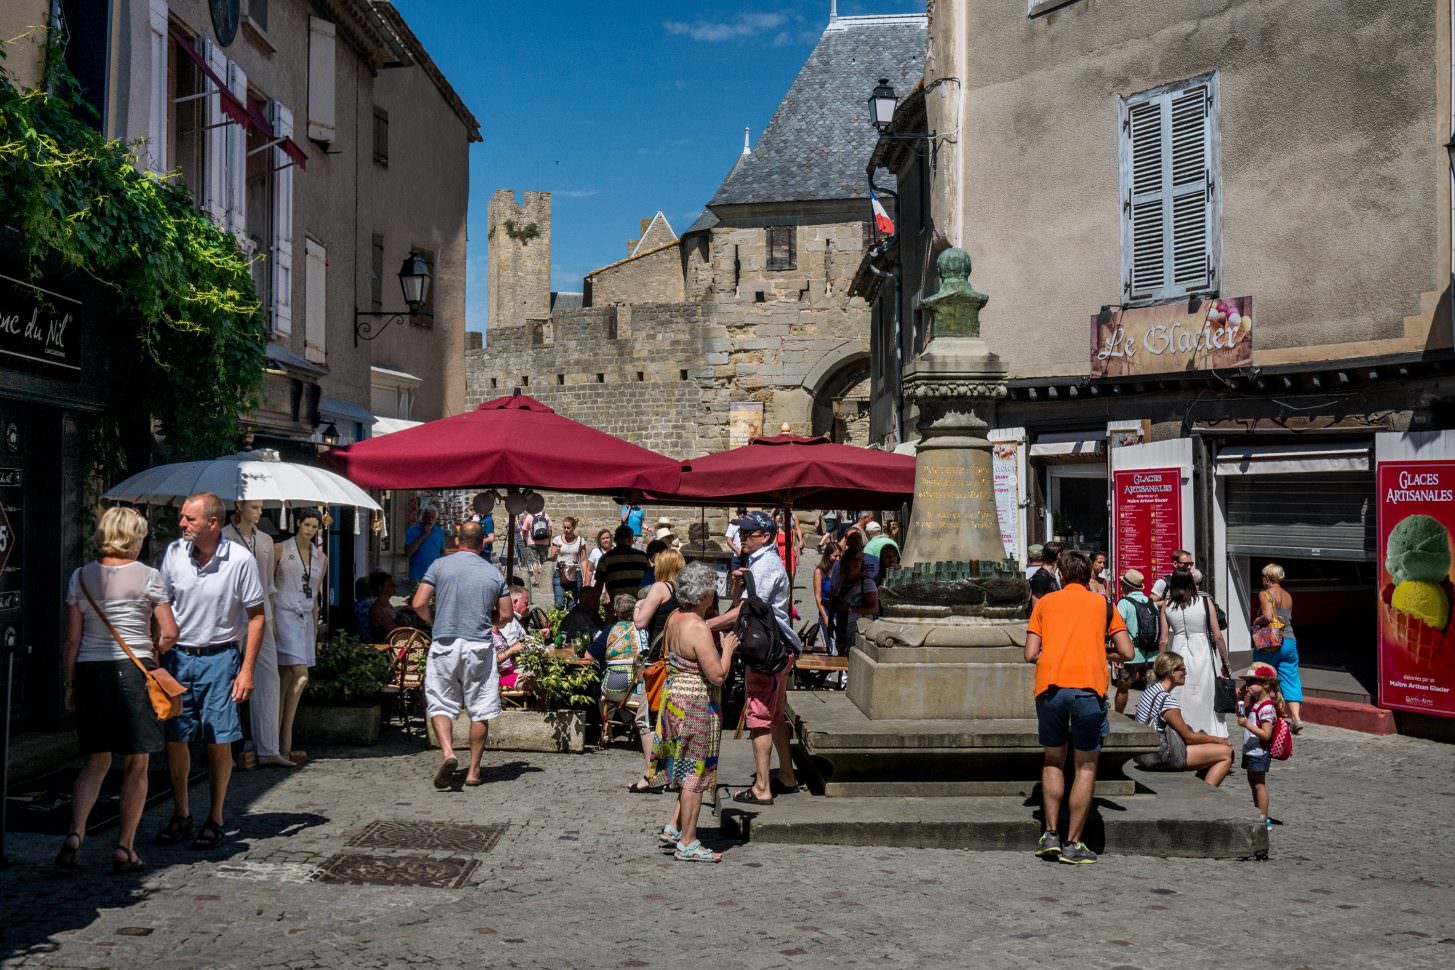 carcassonne-0000-00-cite-place-chateau-touriste-cr-f-chatroussat-adt-aude-1-1455x970.jpg